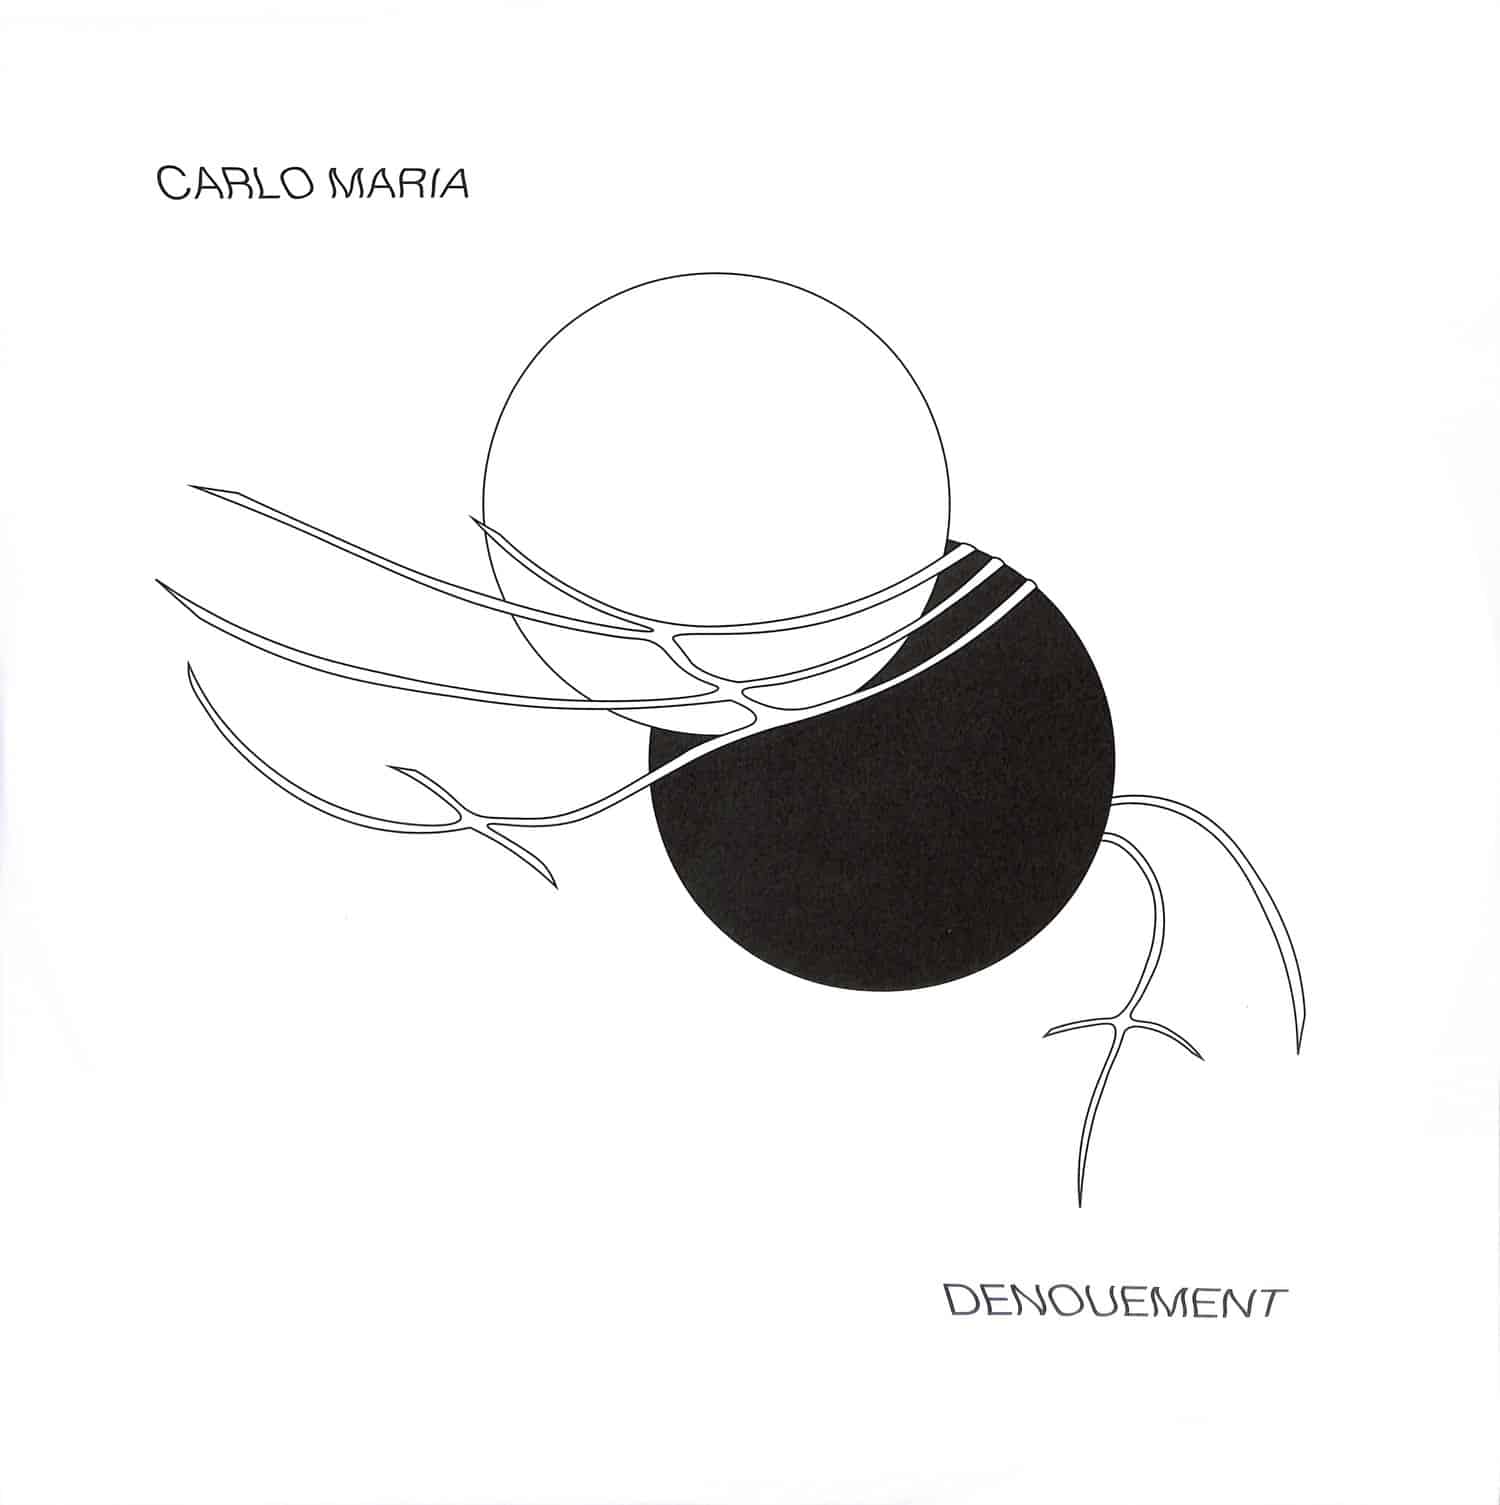 Carlo Maria - DENOUEMENT EP